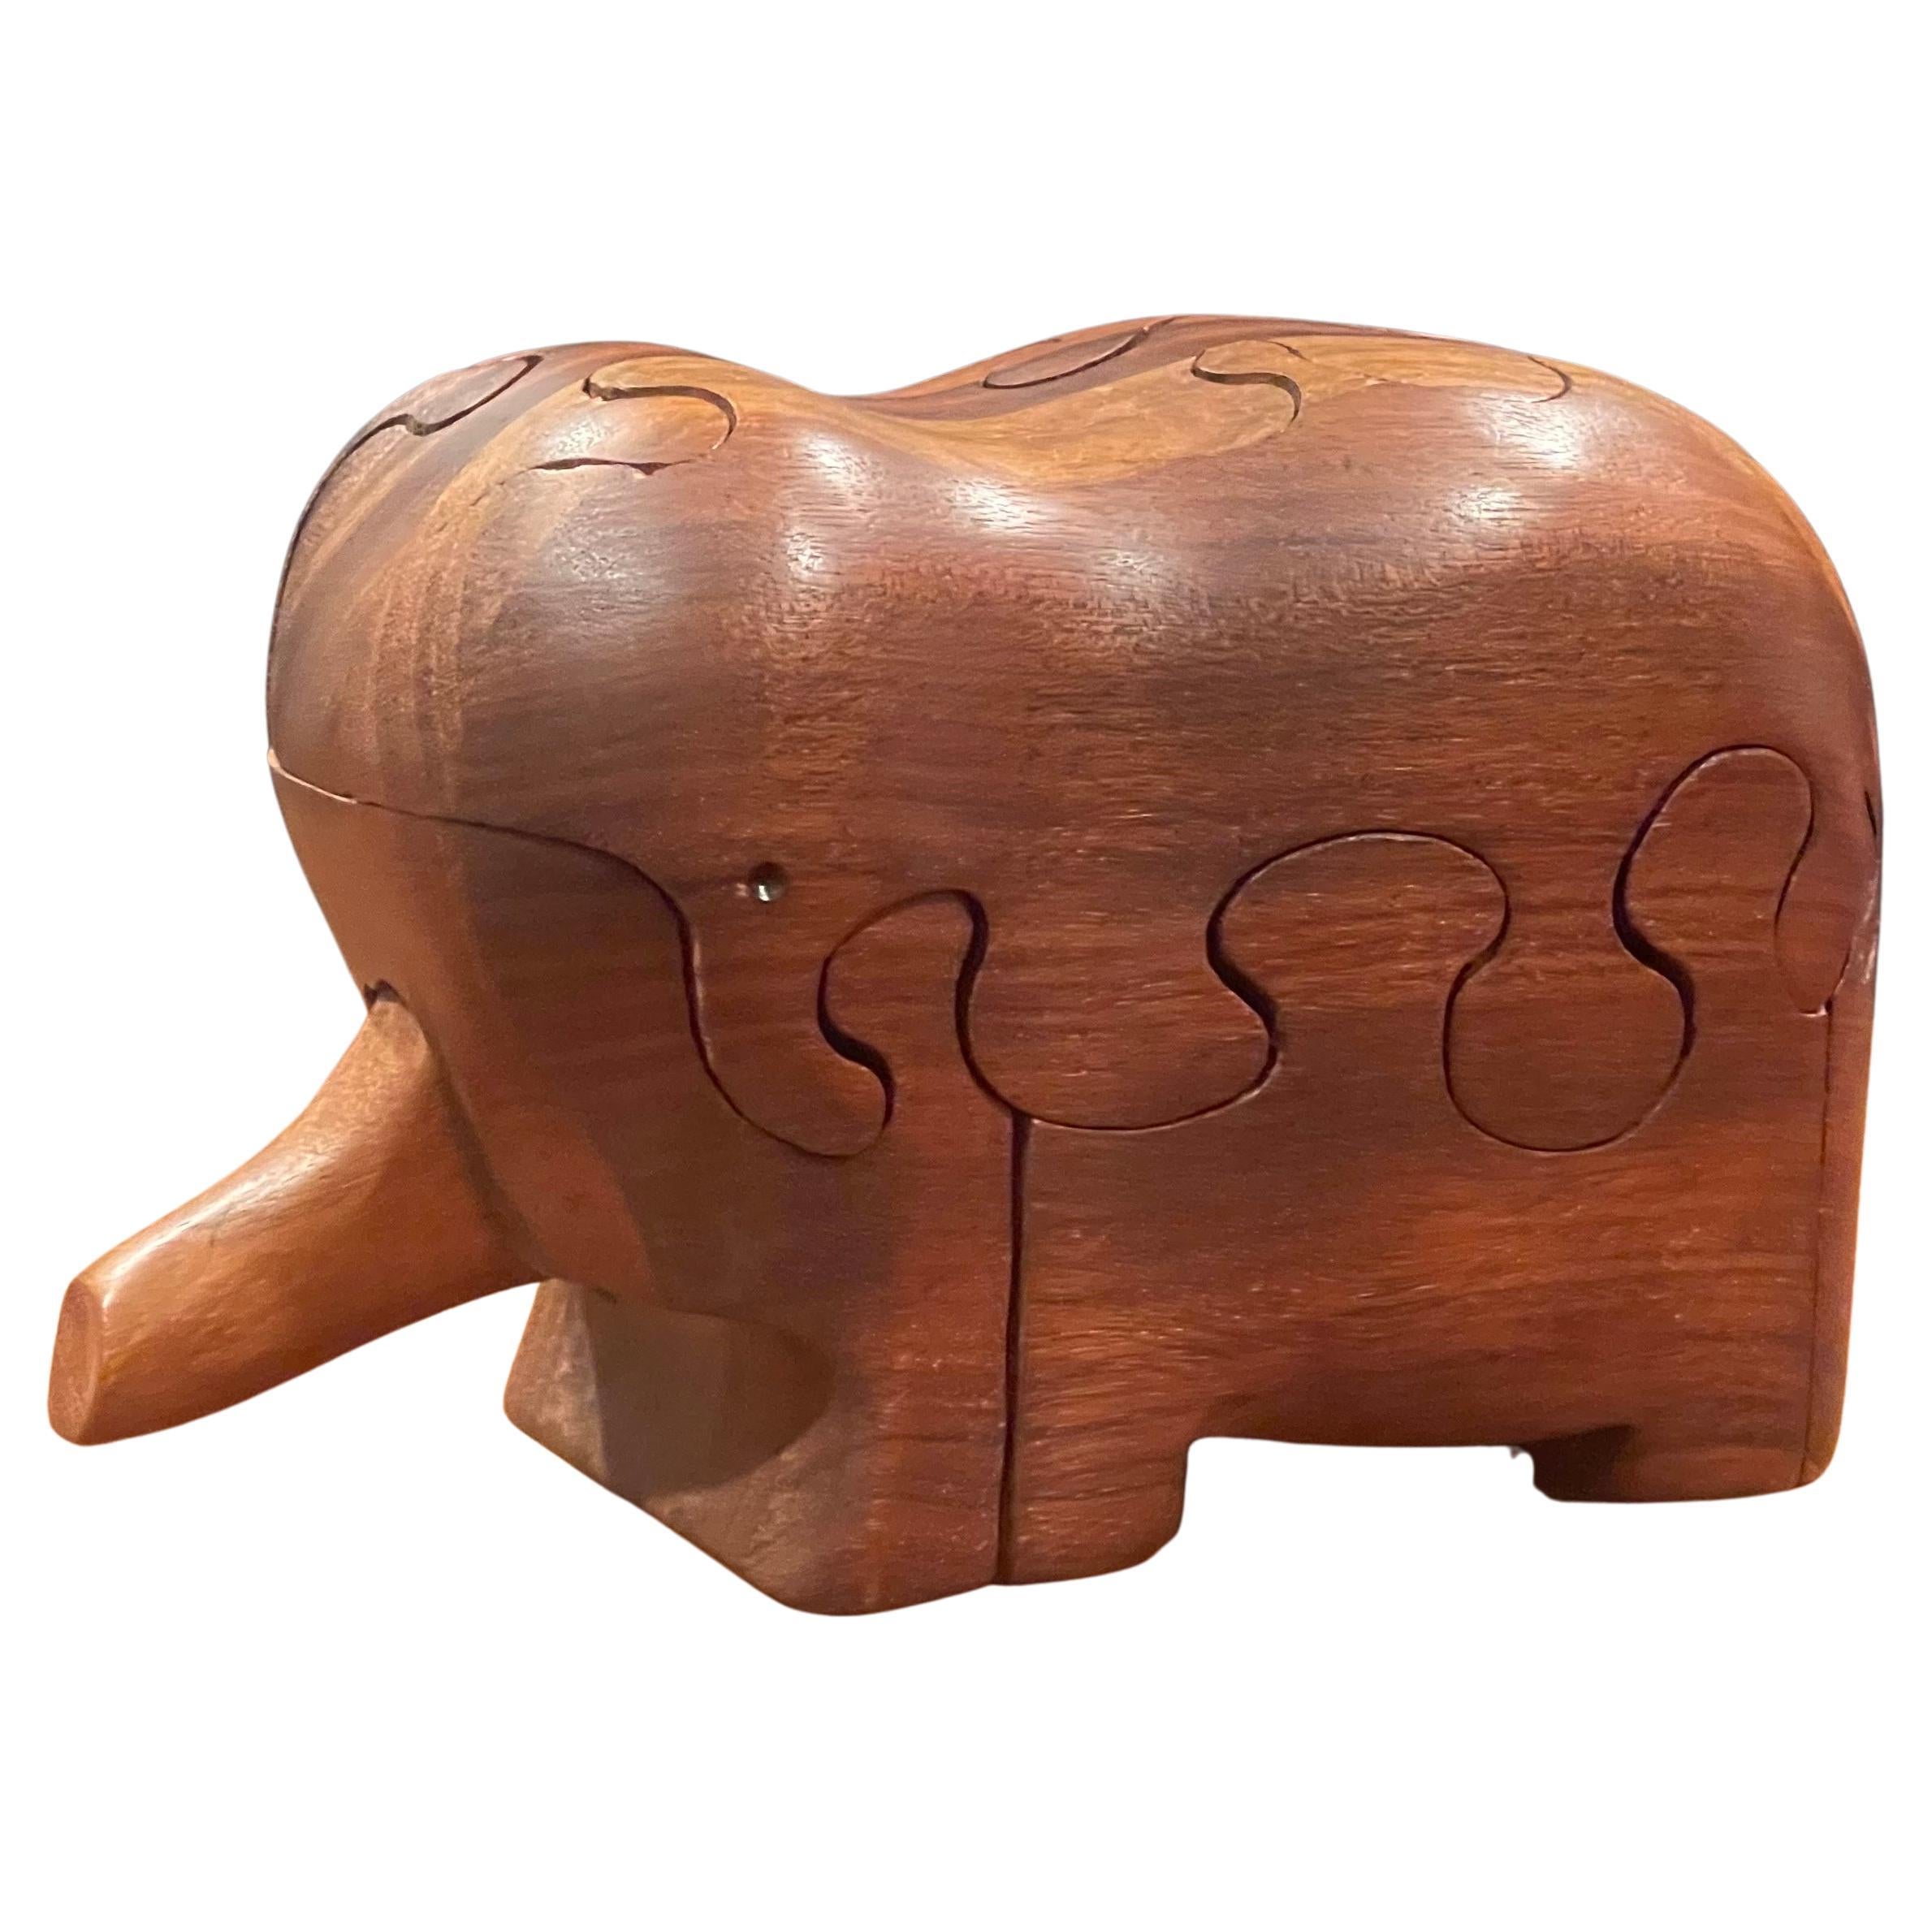 Incroyable travail d'artisanat sur ce puzzle / presse-papier / sculpture d'éléphant en noyer massif, très difficile à trouver, conçu et fabriqué à la main par l'artiste Deborah Bump, vers 1978. La pièce est en très bon état (à l'exception d'une